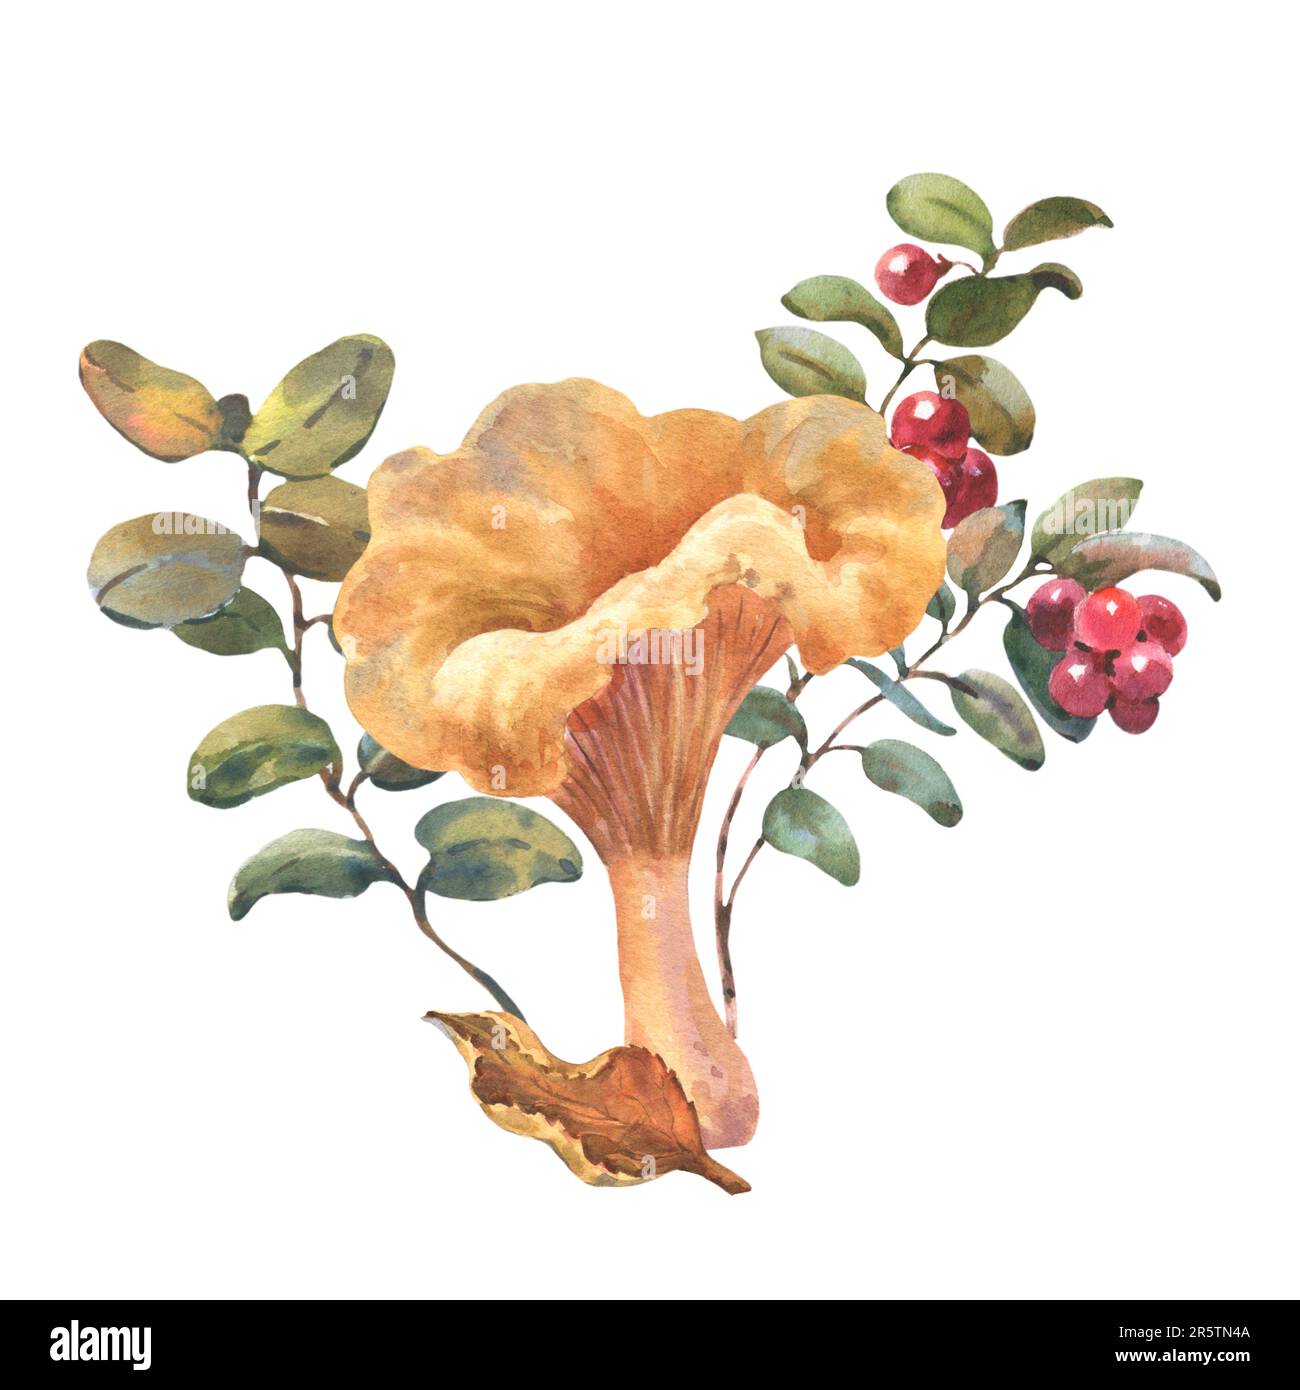 Chanterelle de forêt avec arbustes de canneberges et feuille d'automne. Illustration à l'aquarelle dessinée à la main. Composition isolée sur fond blanc Banque D'Images